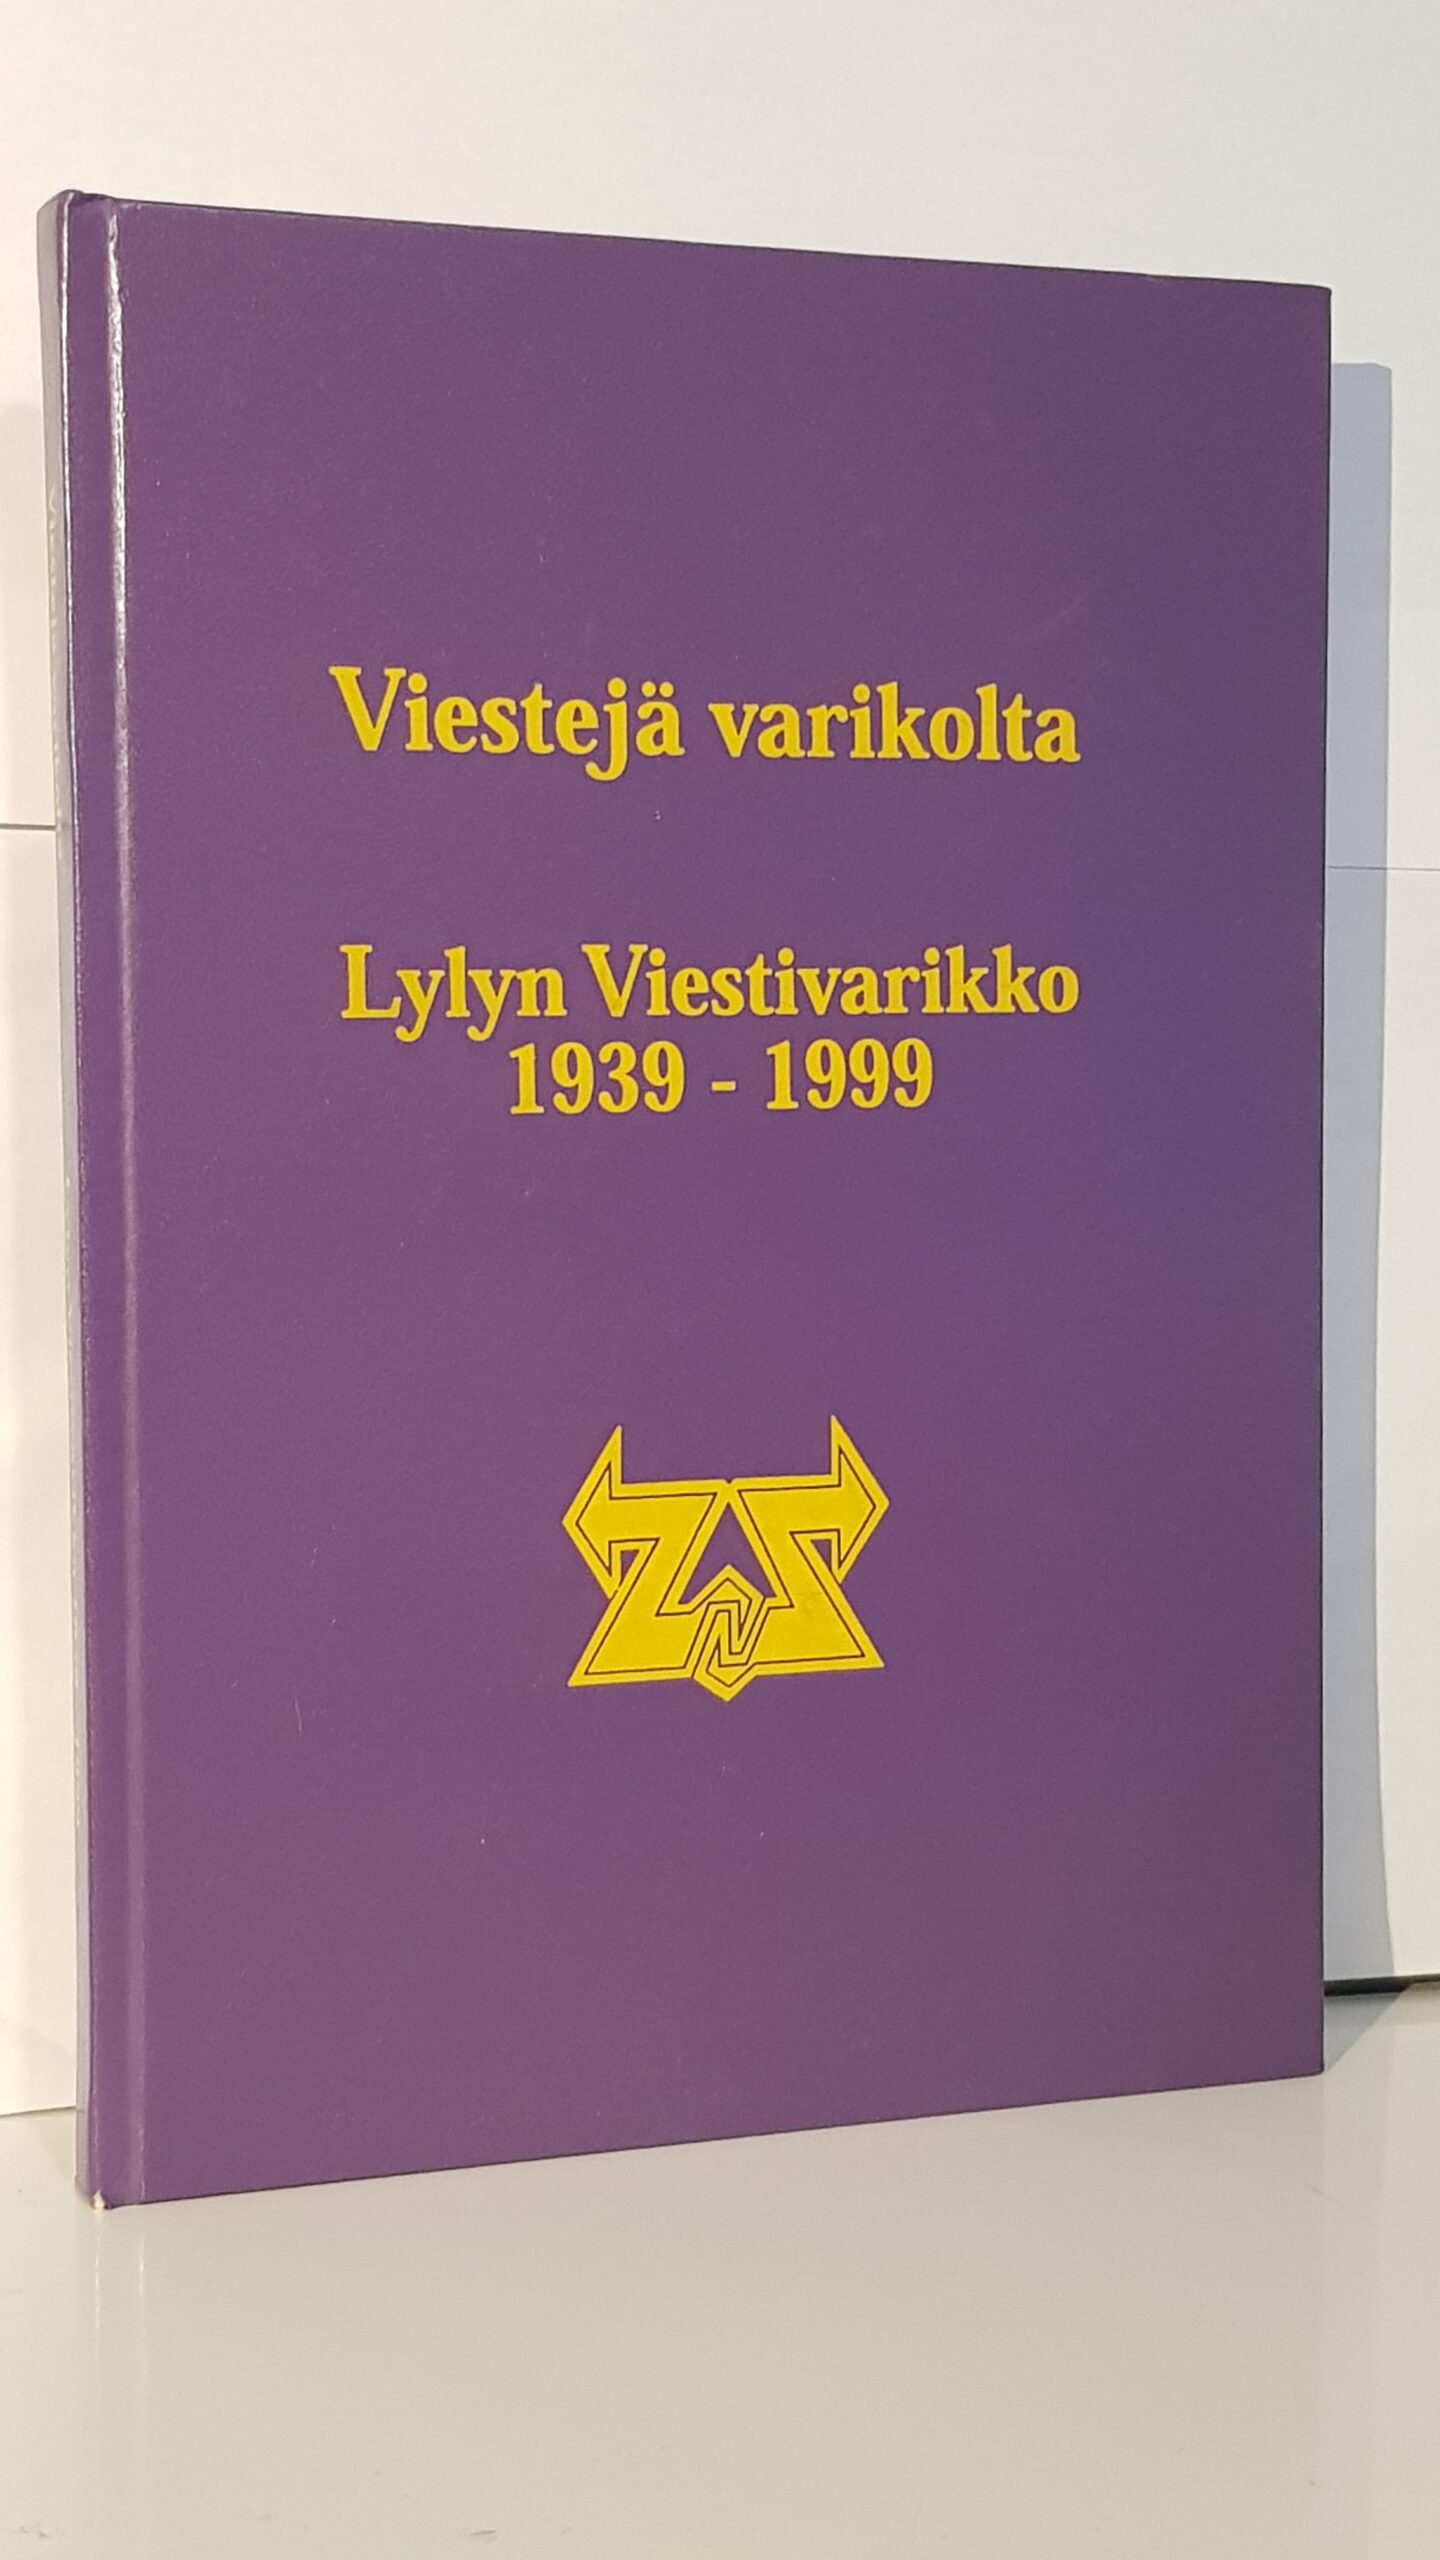 Viestejä varikolta Lylyn Viestivarikko 1939-1999